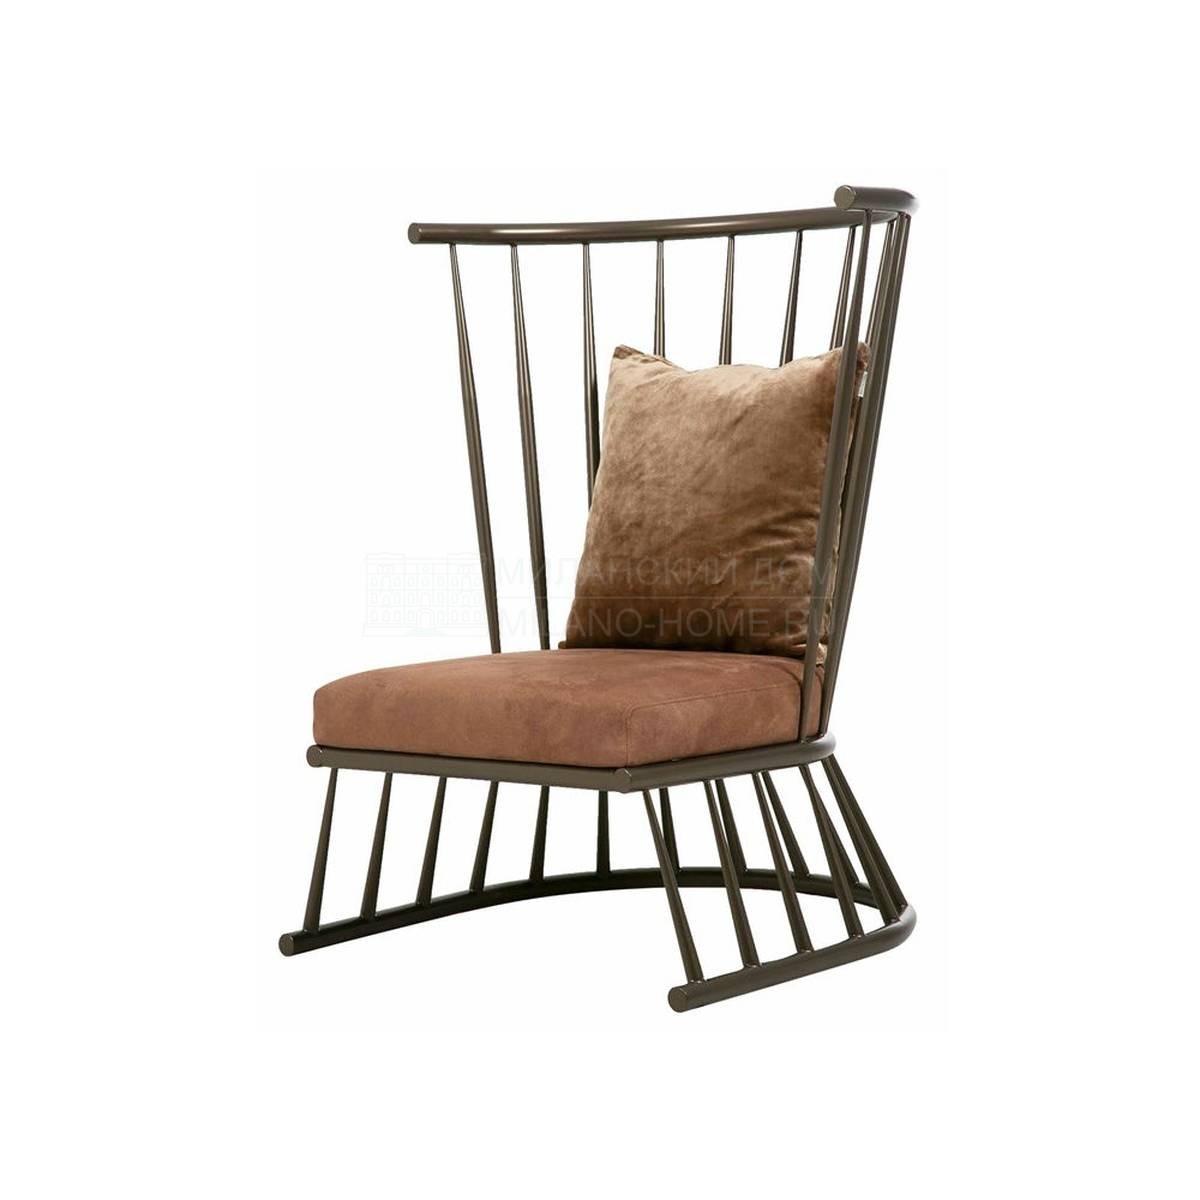 Круглое кресло Windsor armchair bronze из Великобритании фабрики THE SOFA & CHAIR Company